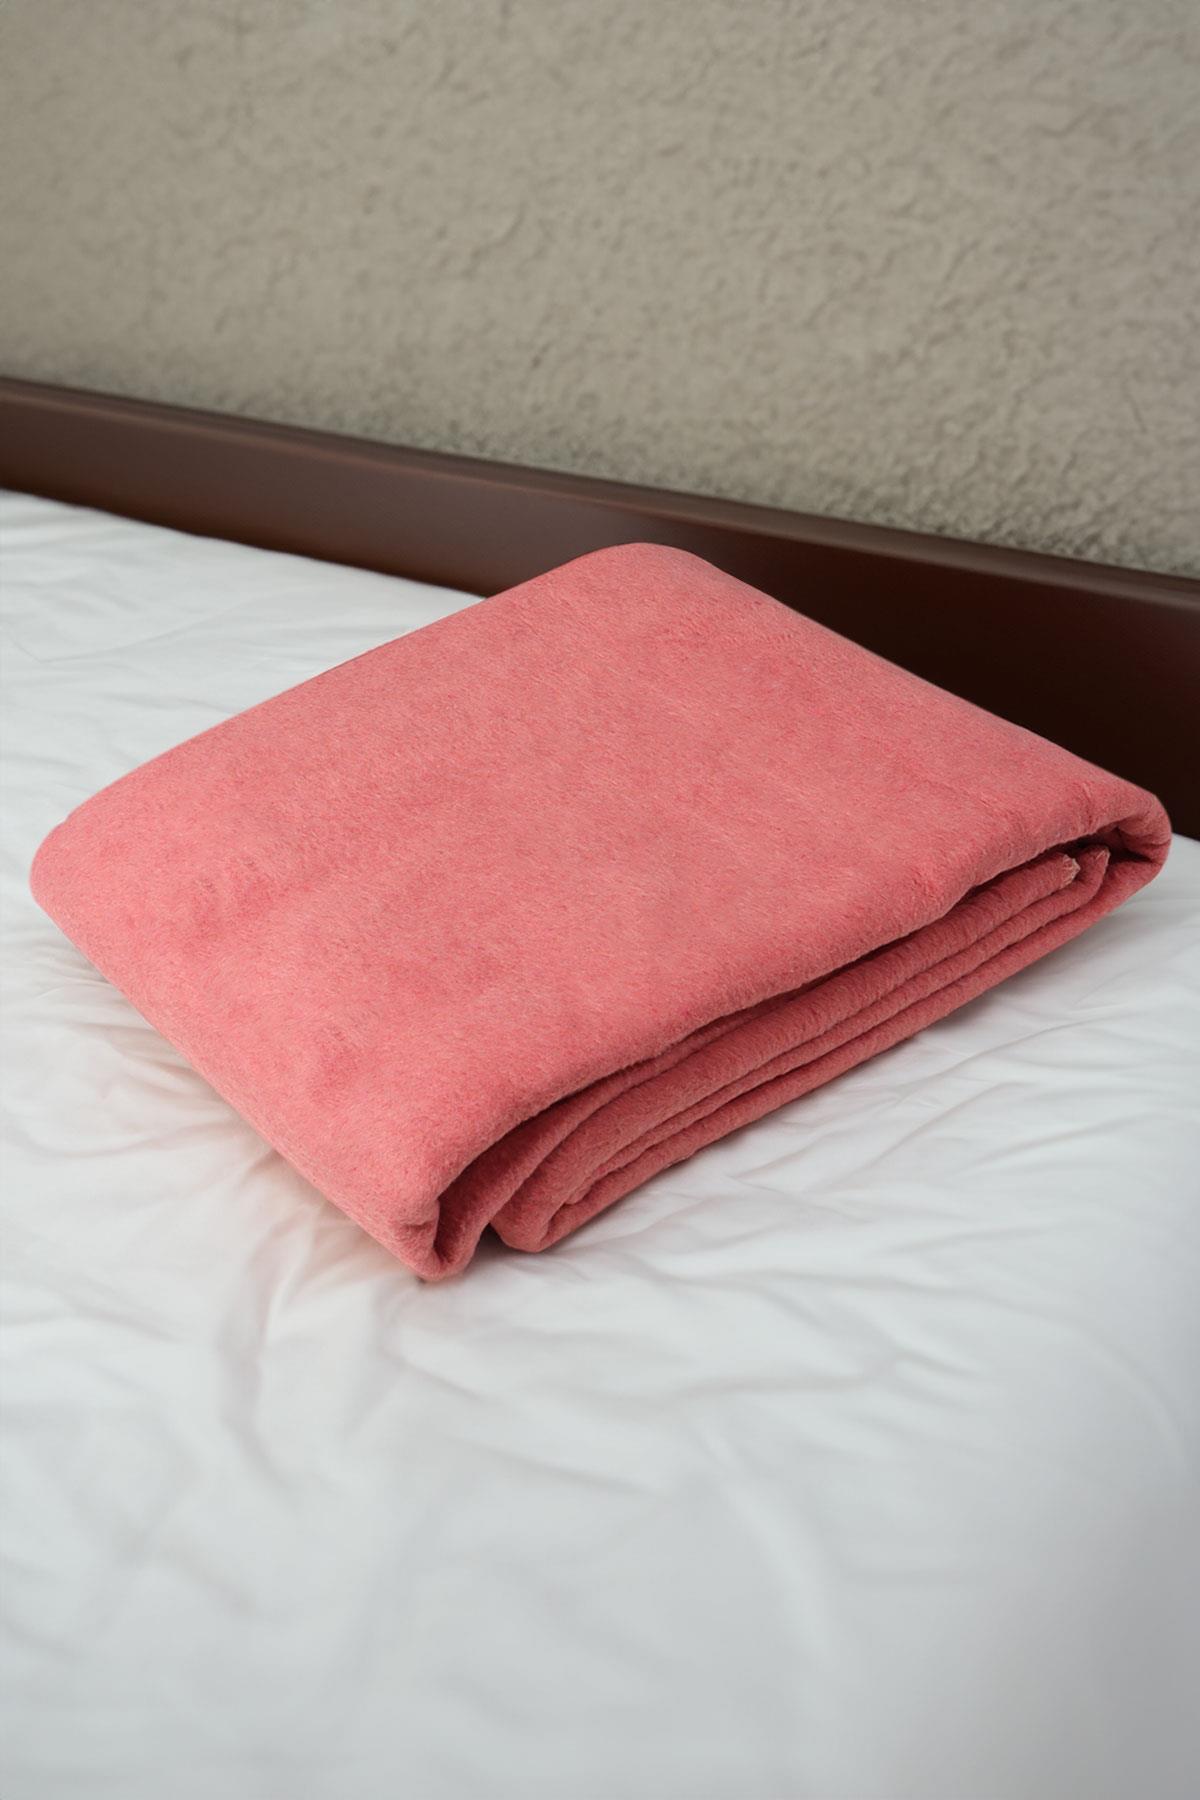 yesilhome cift kisilik pamuk battaniye cift tarafli battaniye pembe krem 120020.jpg